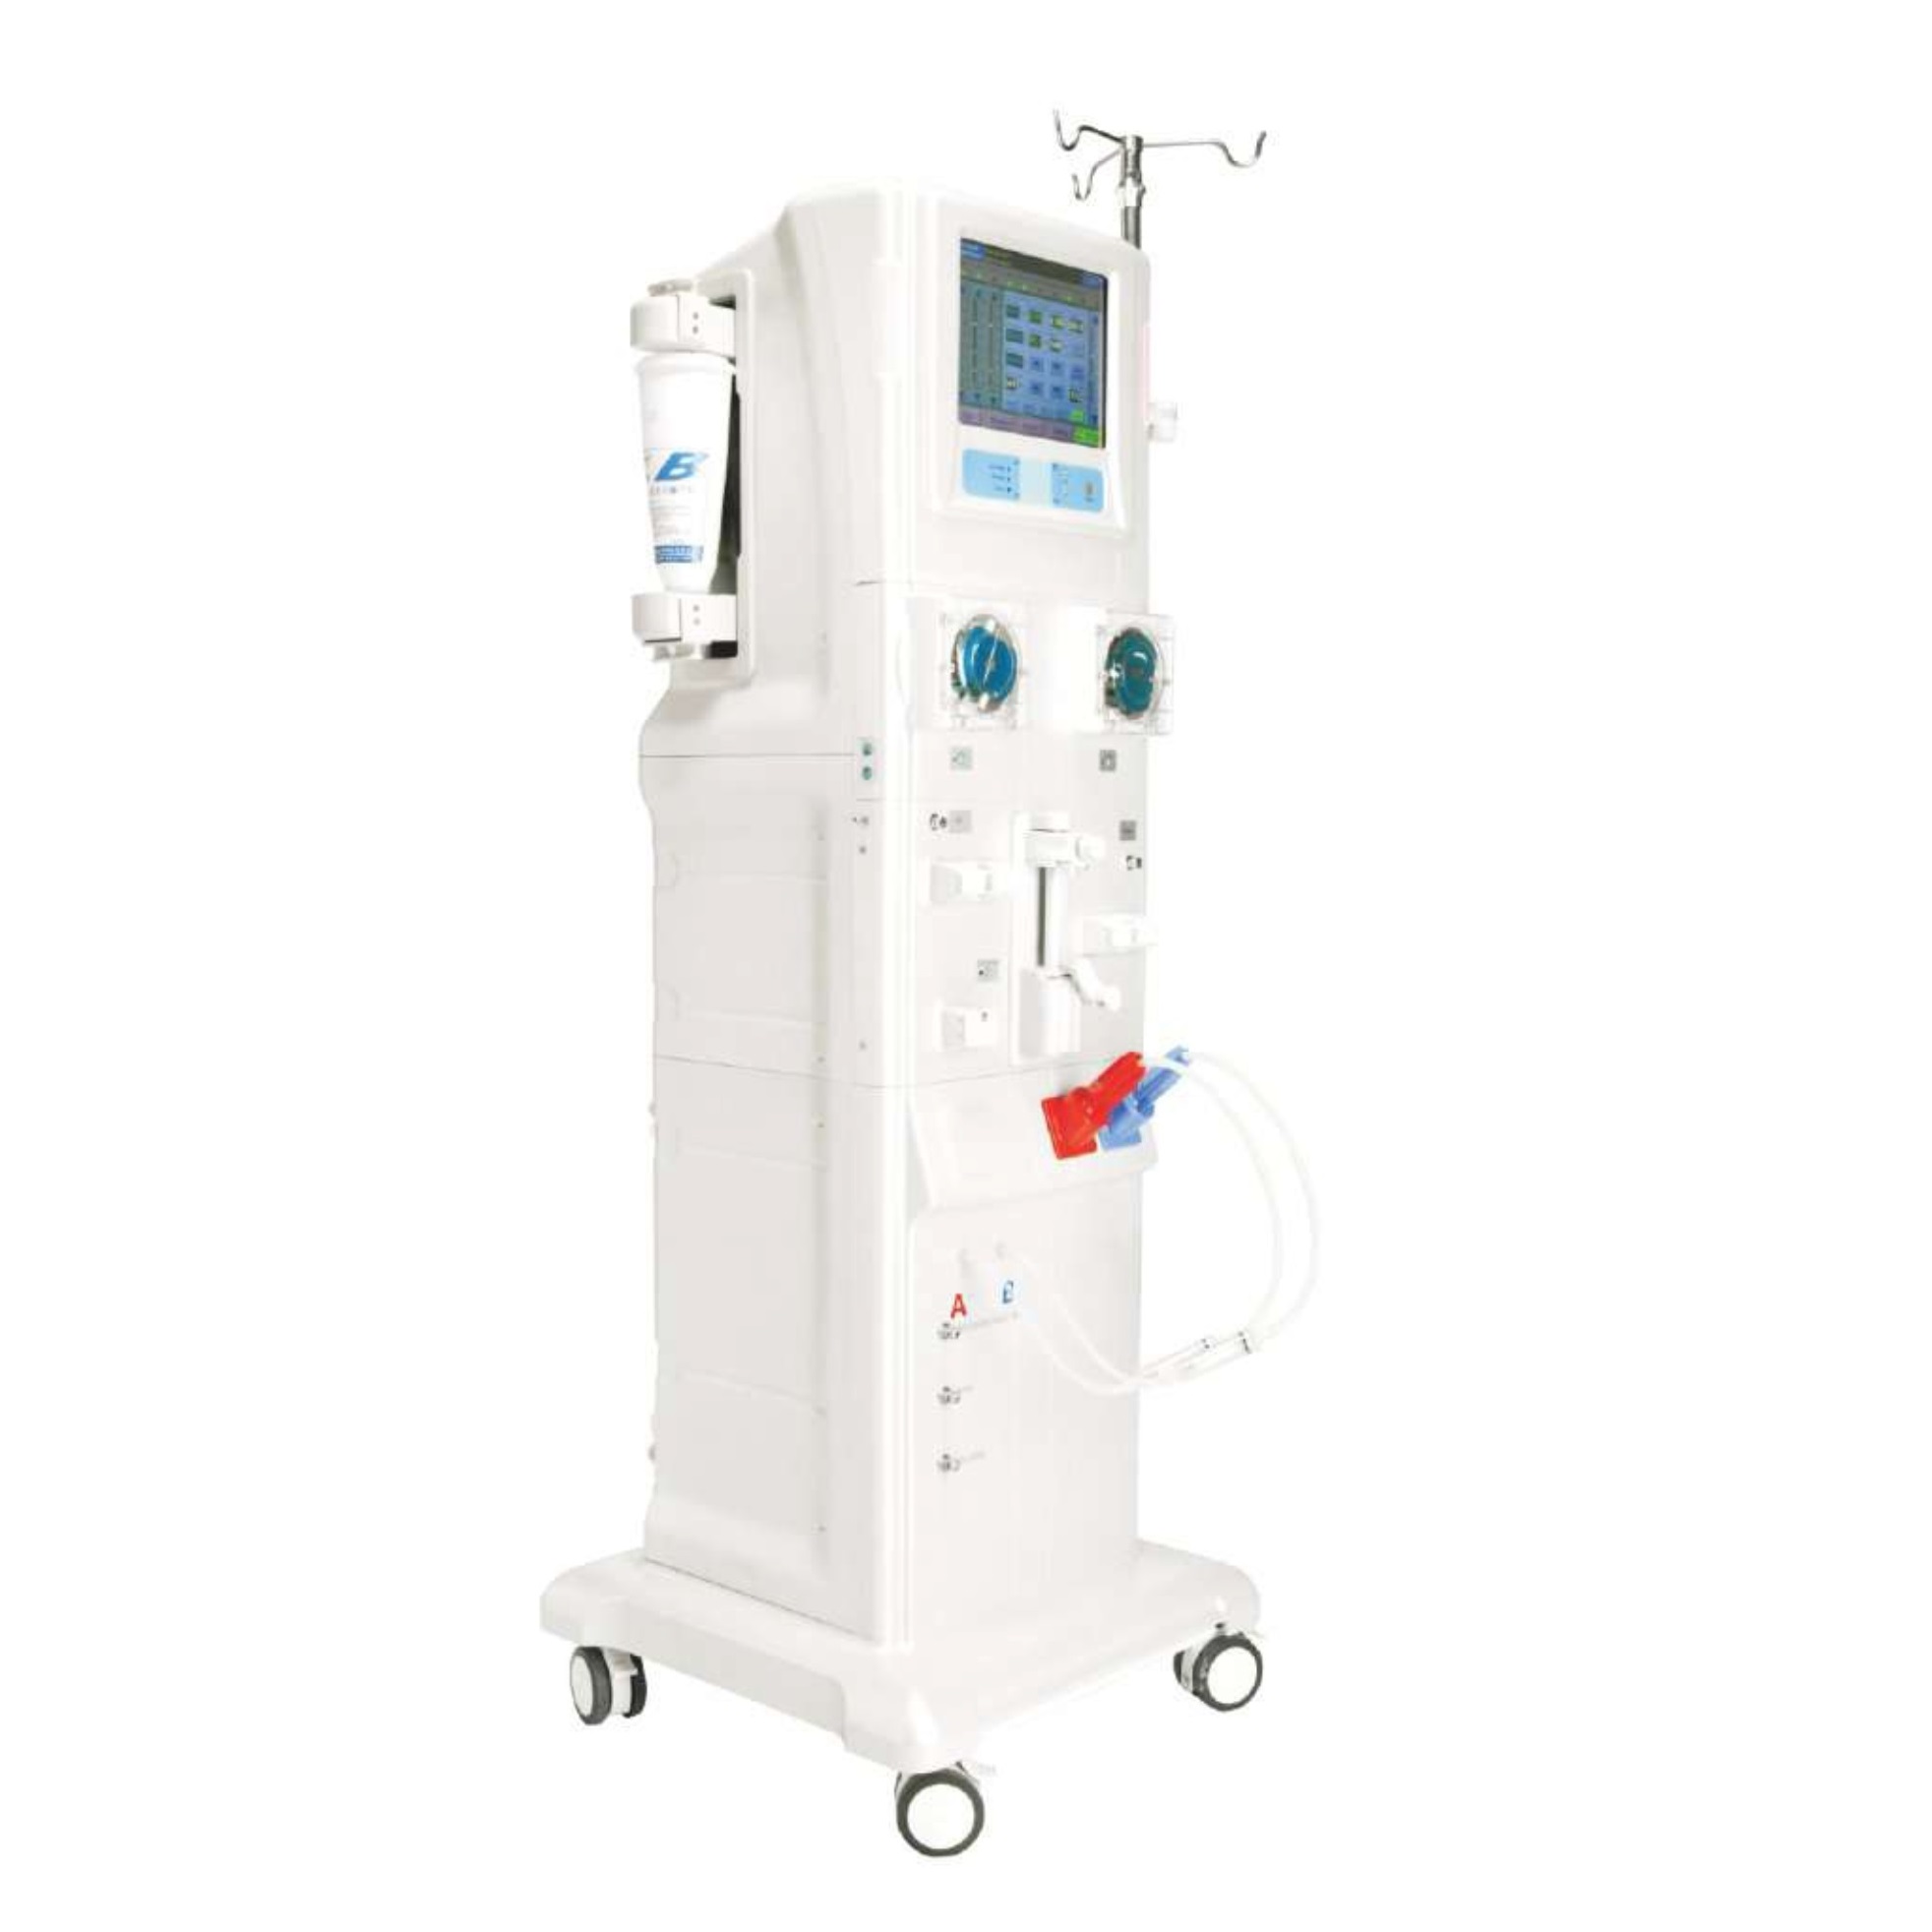 Высококачественная машина для гемодиализа в медицинской больнице, одобренная CE/ISO (MT05012002)